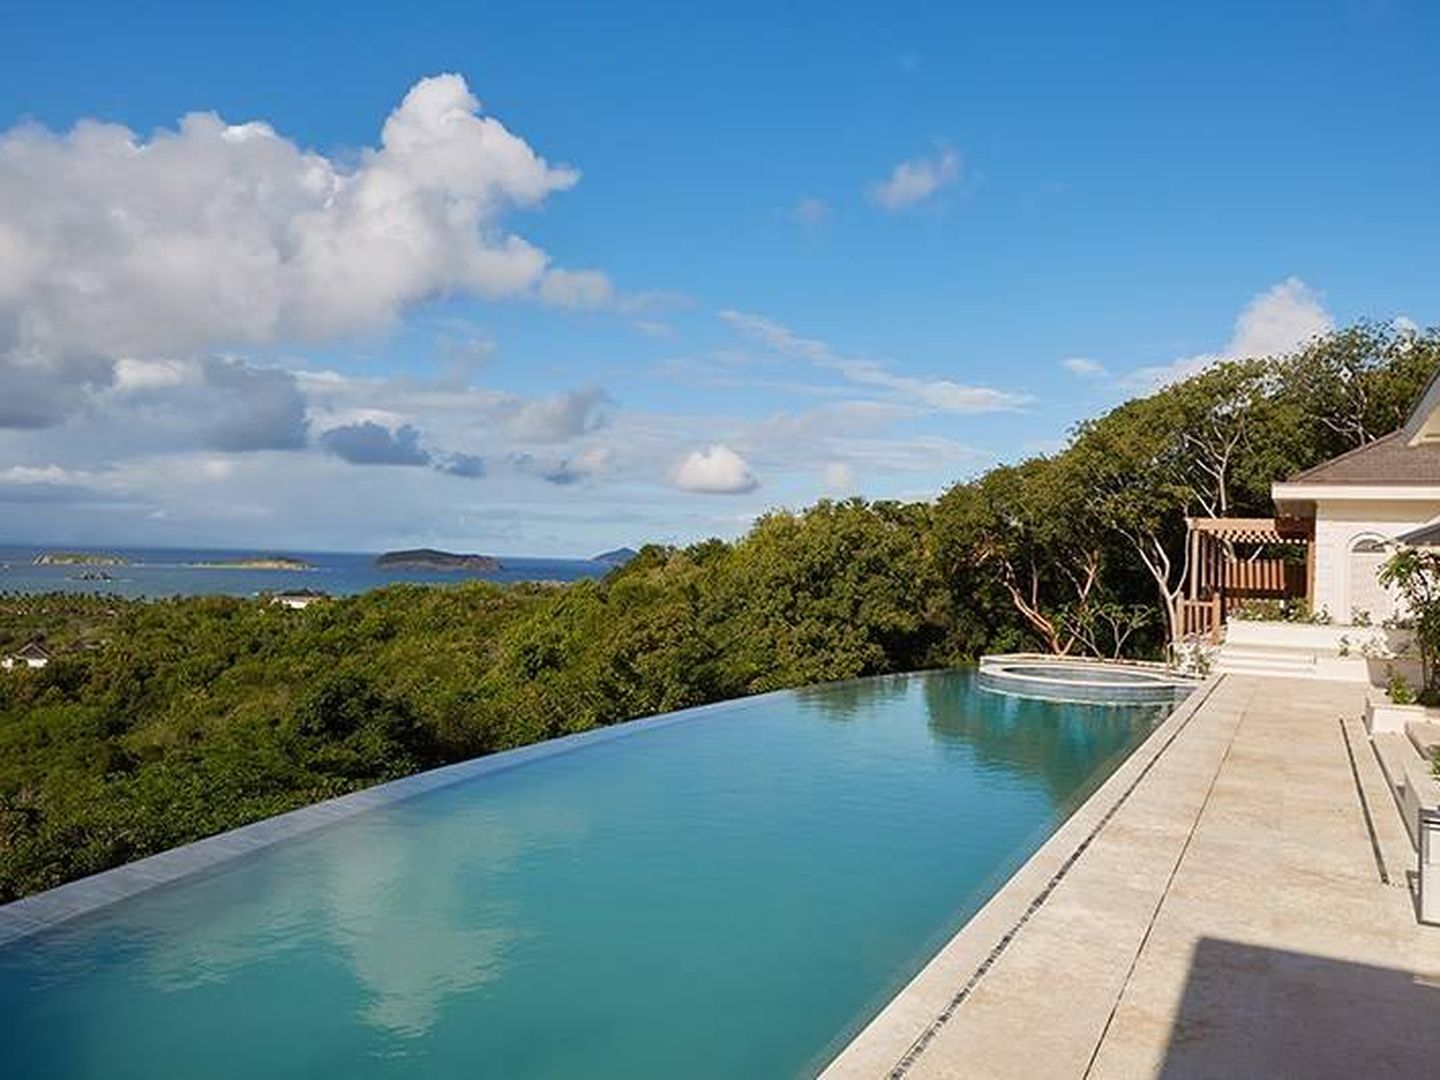 La impresionante inifinity pool de Villa Antilles. (mustique-island.com)